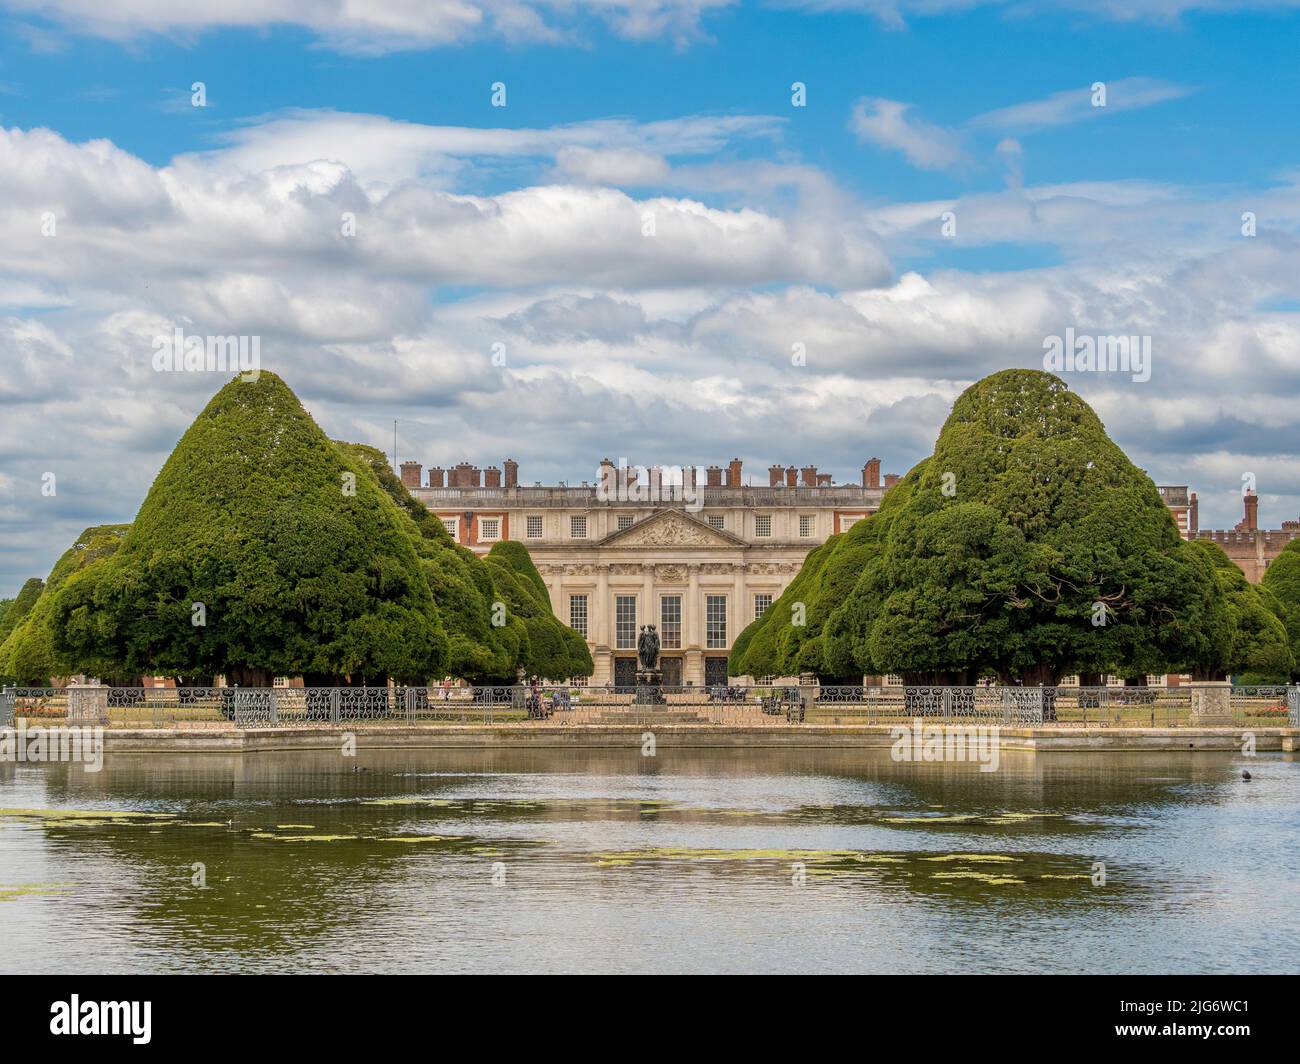 Face est du palais de Hampton court encadré par le jardin de la grande fontaine, les arbres sont plantés de longues eaux au premier plan. Londres. ROYAUME-UNI. Banque D'Images